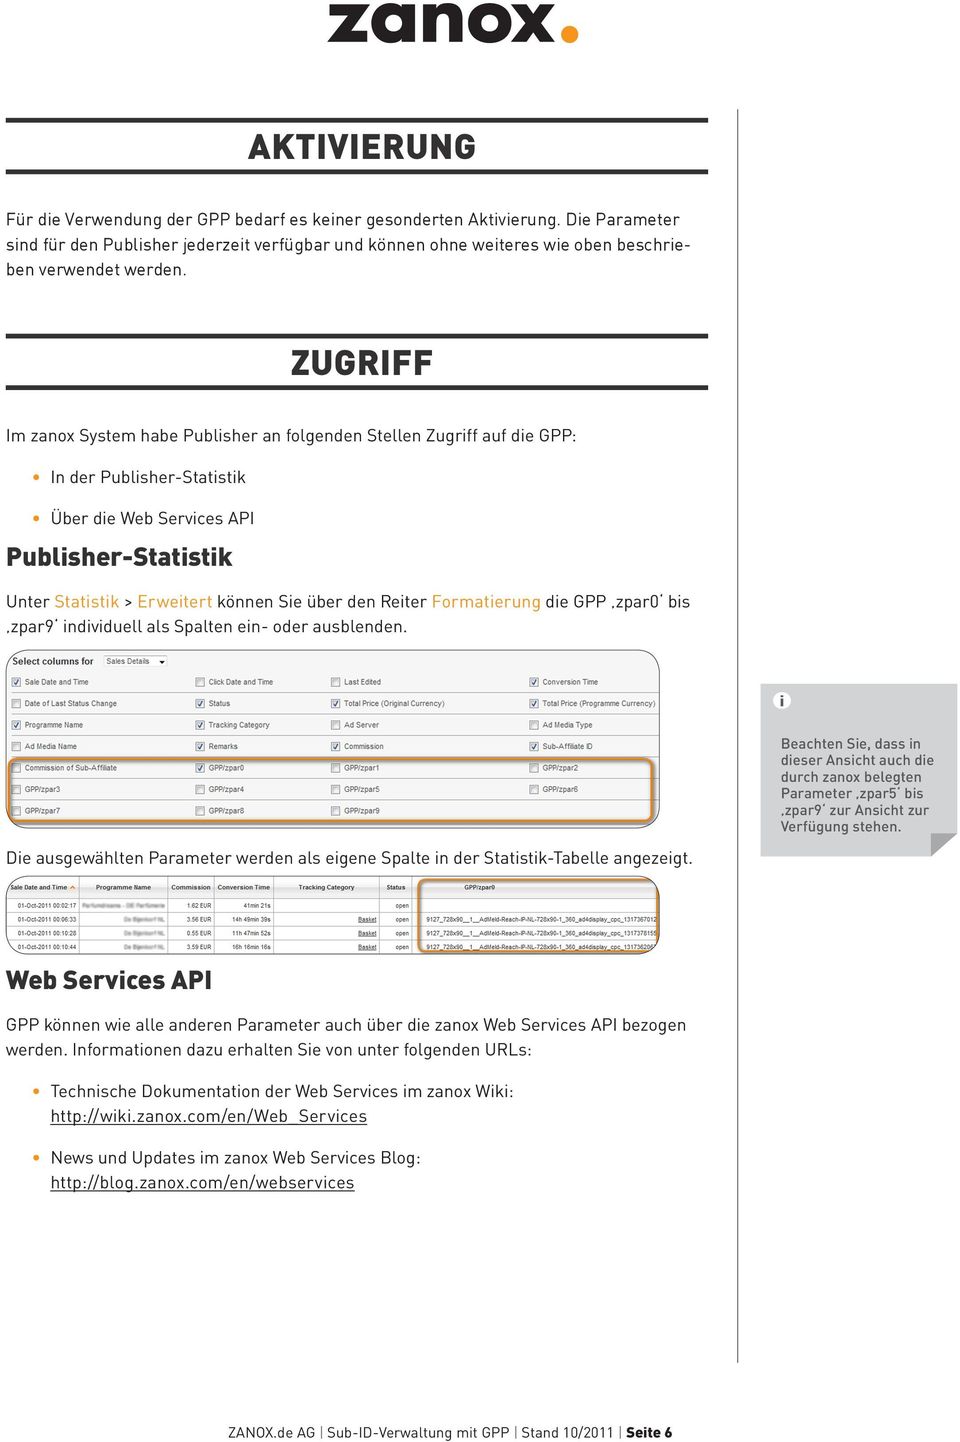 ZUGRIFF Im zanox System habe Publisher an folgenden Stellen Zugriff auf die GPP: In der Publisher-Statistik Über die Web Services API Publisher-Statistik Unter Statistik > Erweitert können Sie über